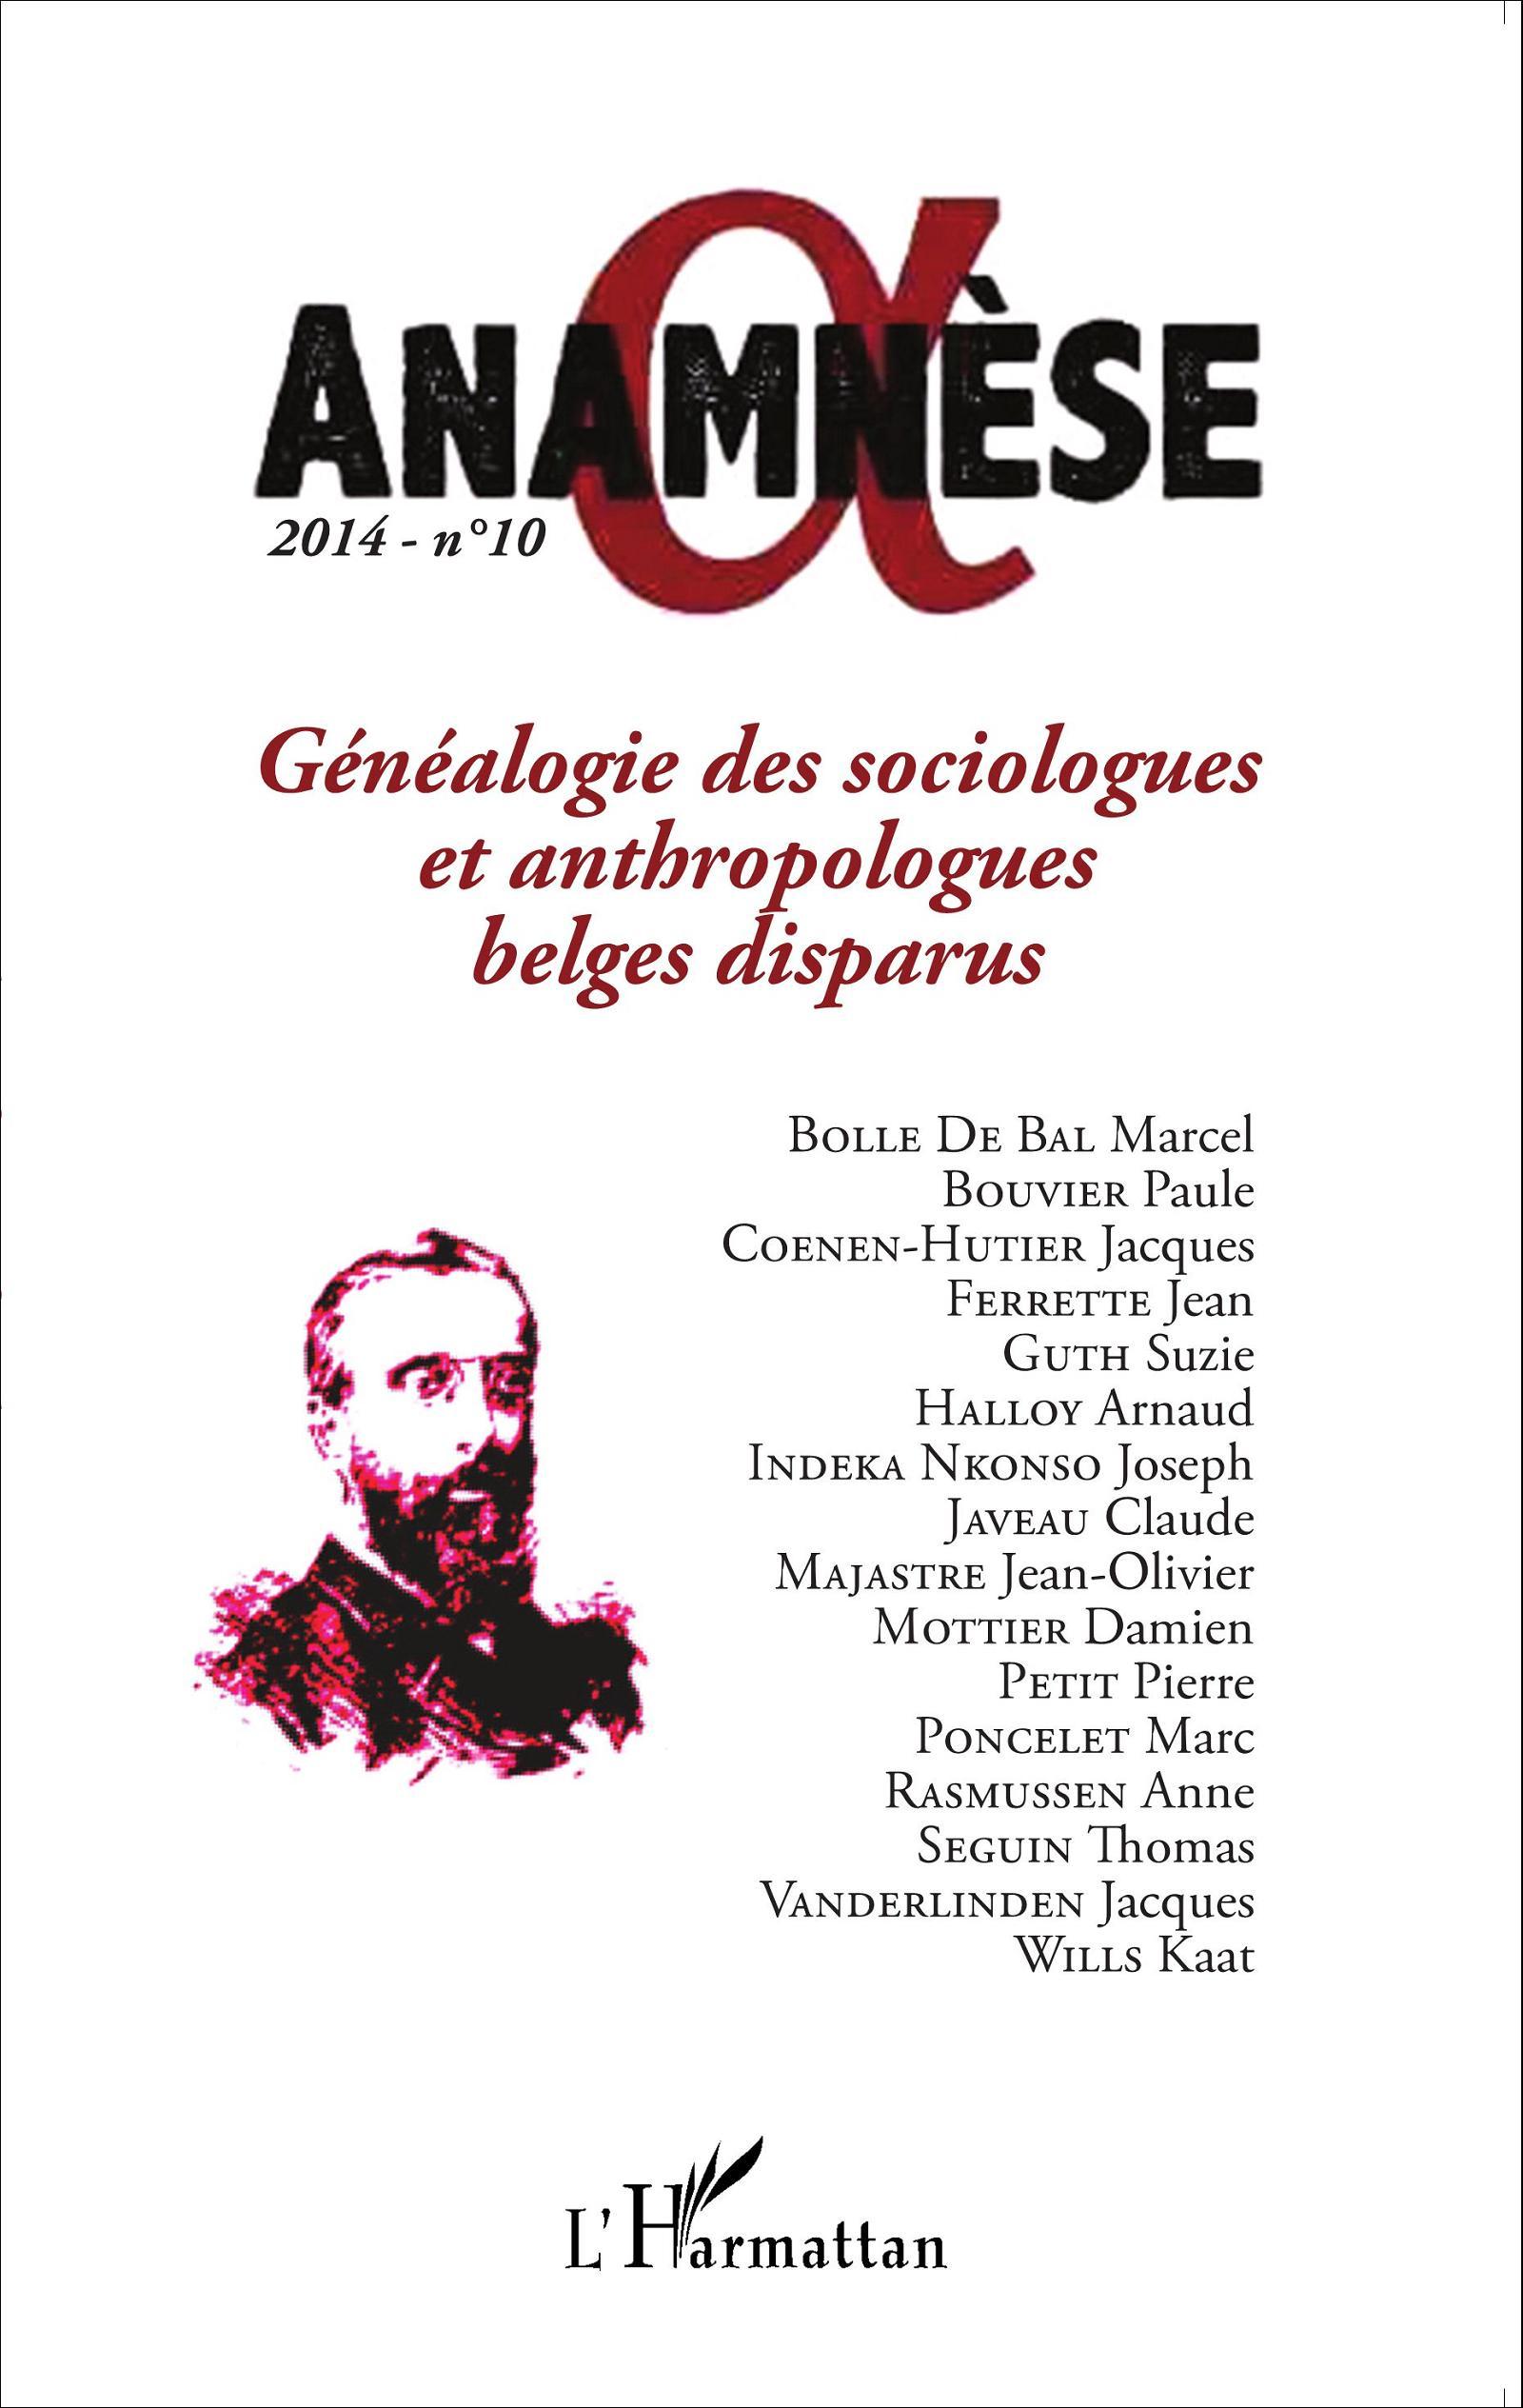 ANAMNESE, Généalogie des sociologues et anthropologues belges disparus (9782343049960-front-cover)